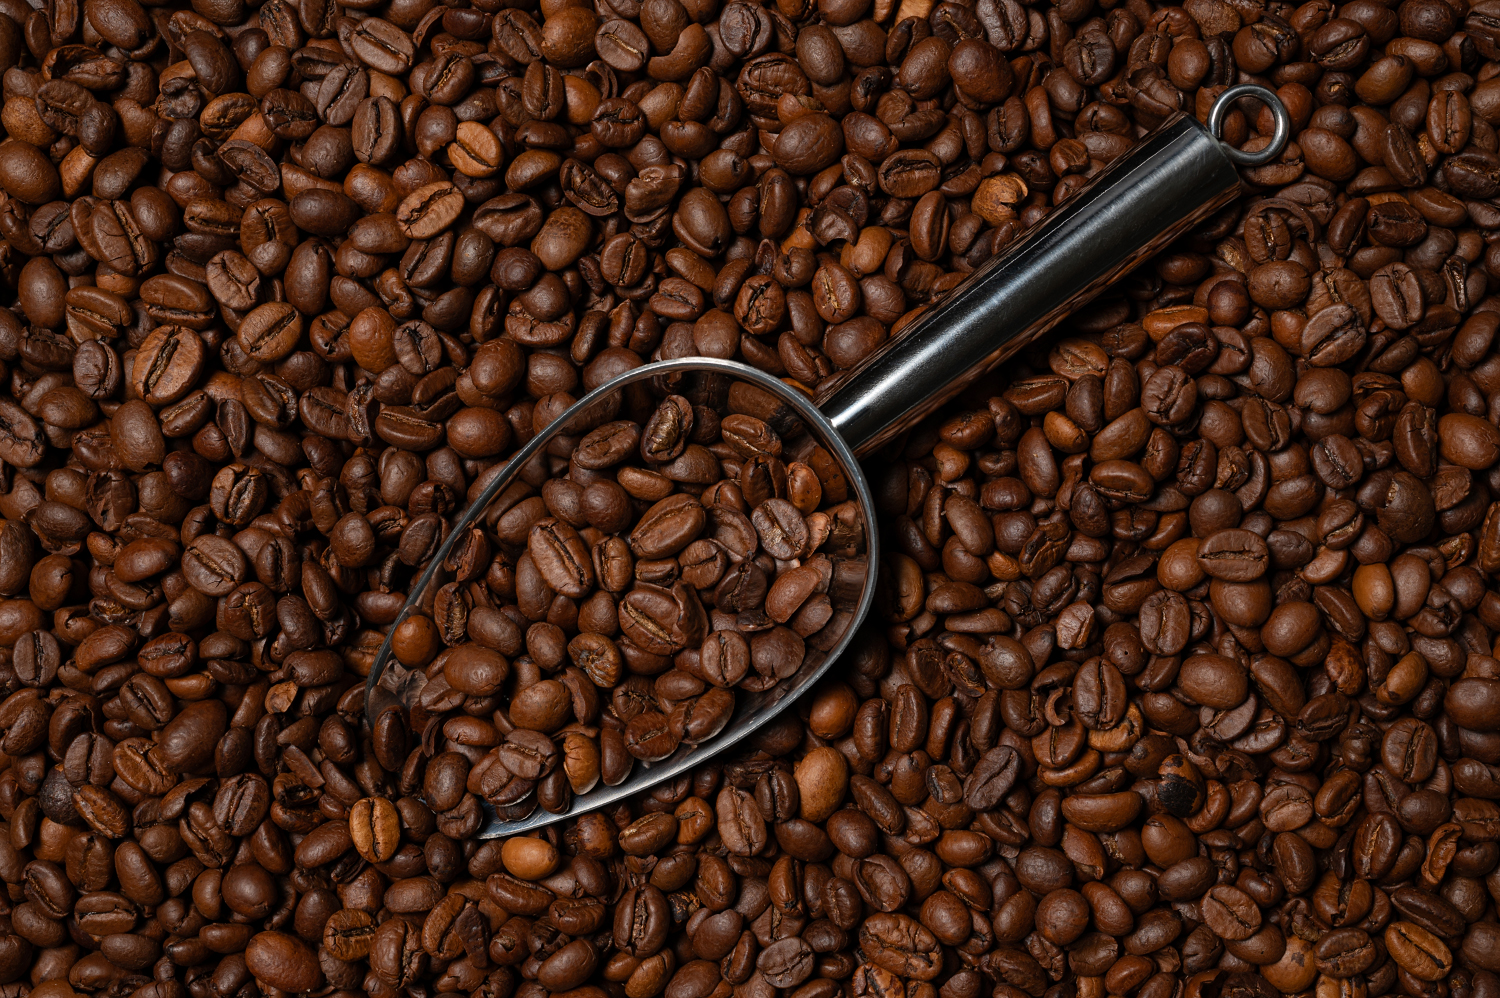 Eine dichte Ansammlung von gerösteten Kaffeebohnen füllt das Bild, zentral akzentuiert durch einen glänzenden Metallkaffeelöffel. Ideal für Publikationen zum Thema Kaffee, Gastronomie und Handel, bietet das Bild reiche Texturen und Tiefenschärfe.